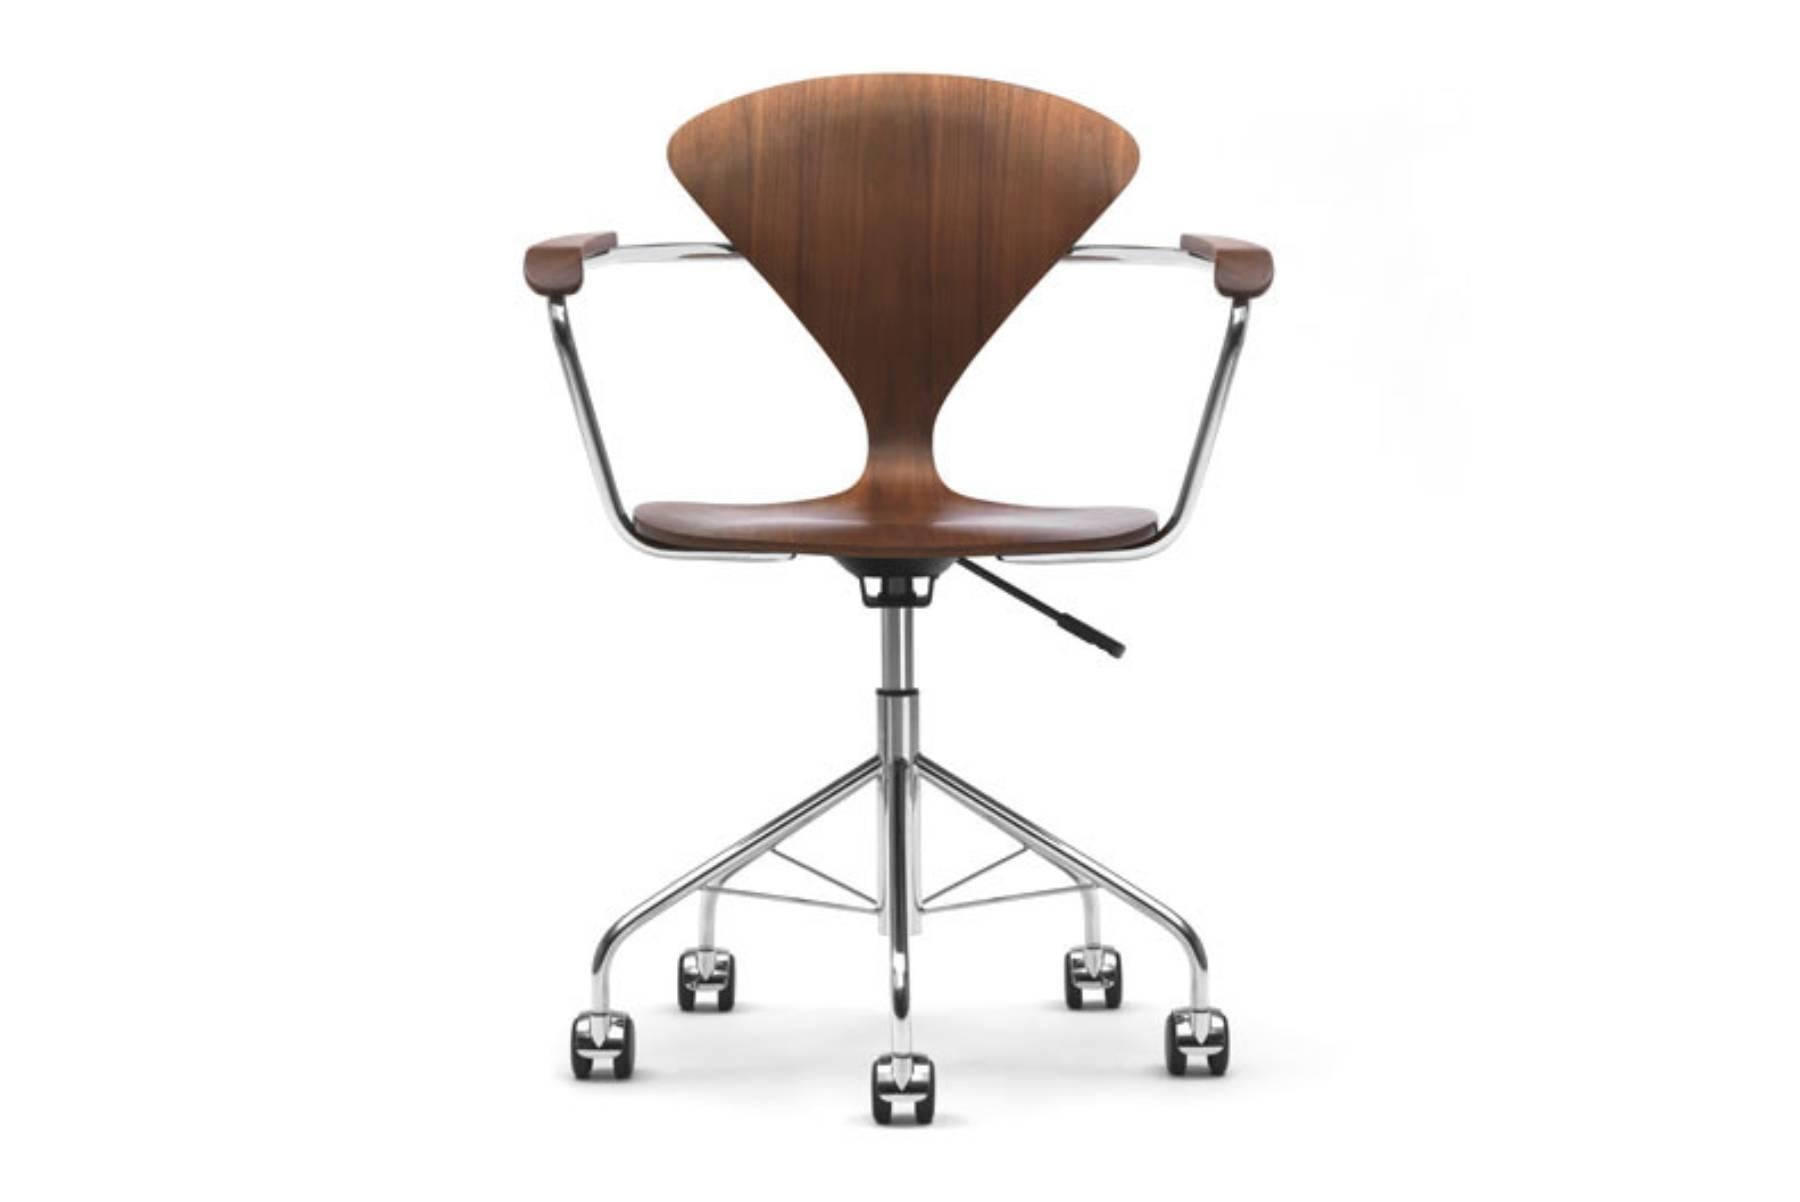 La chaise de travail en contreplaqué moulé de Norman Cherner, datant de 1958, est désormais accessible à une nouvelle génération de collectionneurs de meubles. Un ajout solide, léger et gracieux à la maison ou au bureau. La chaise de travail est